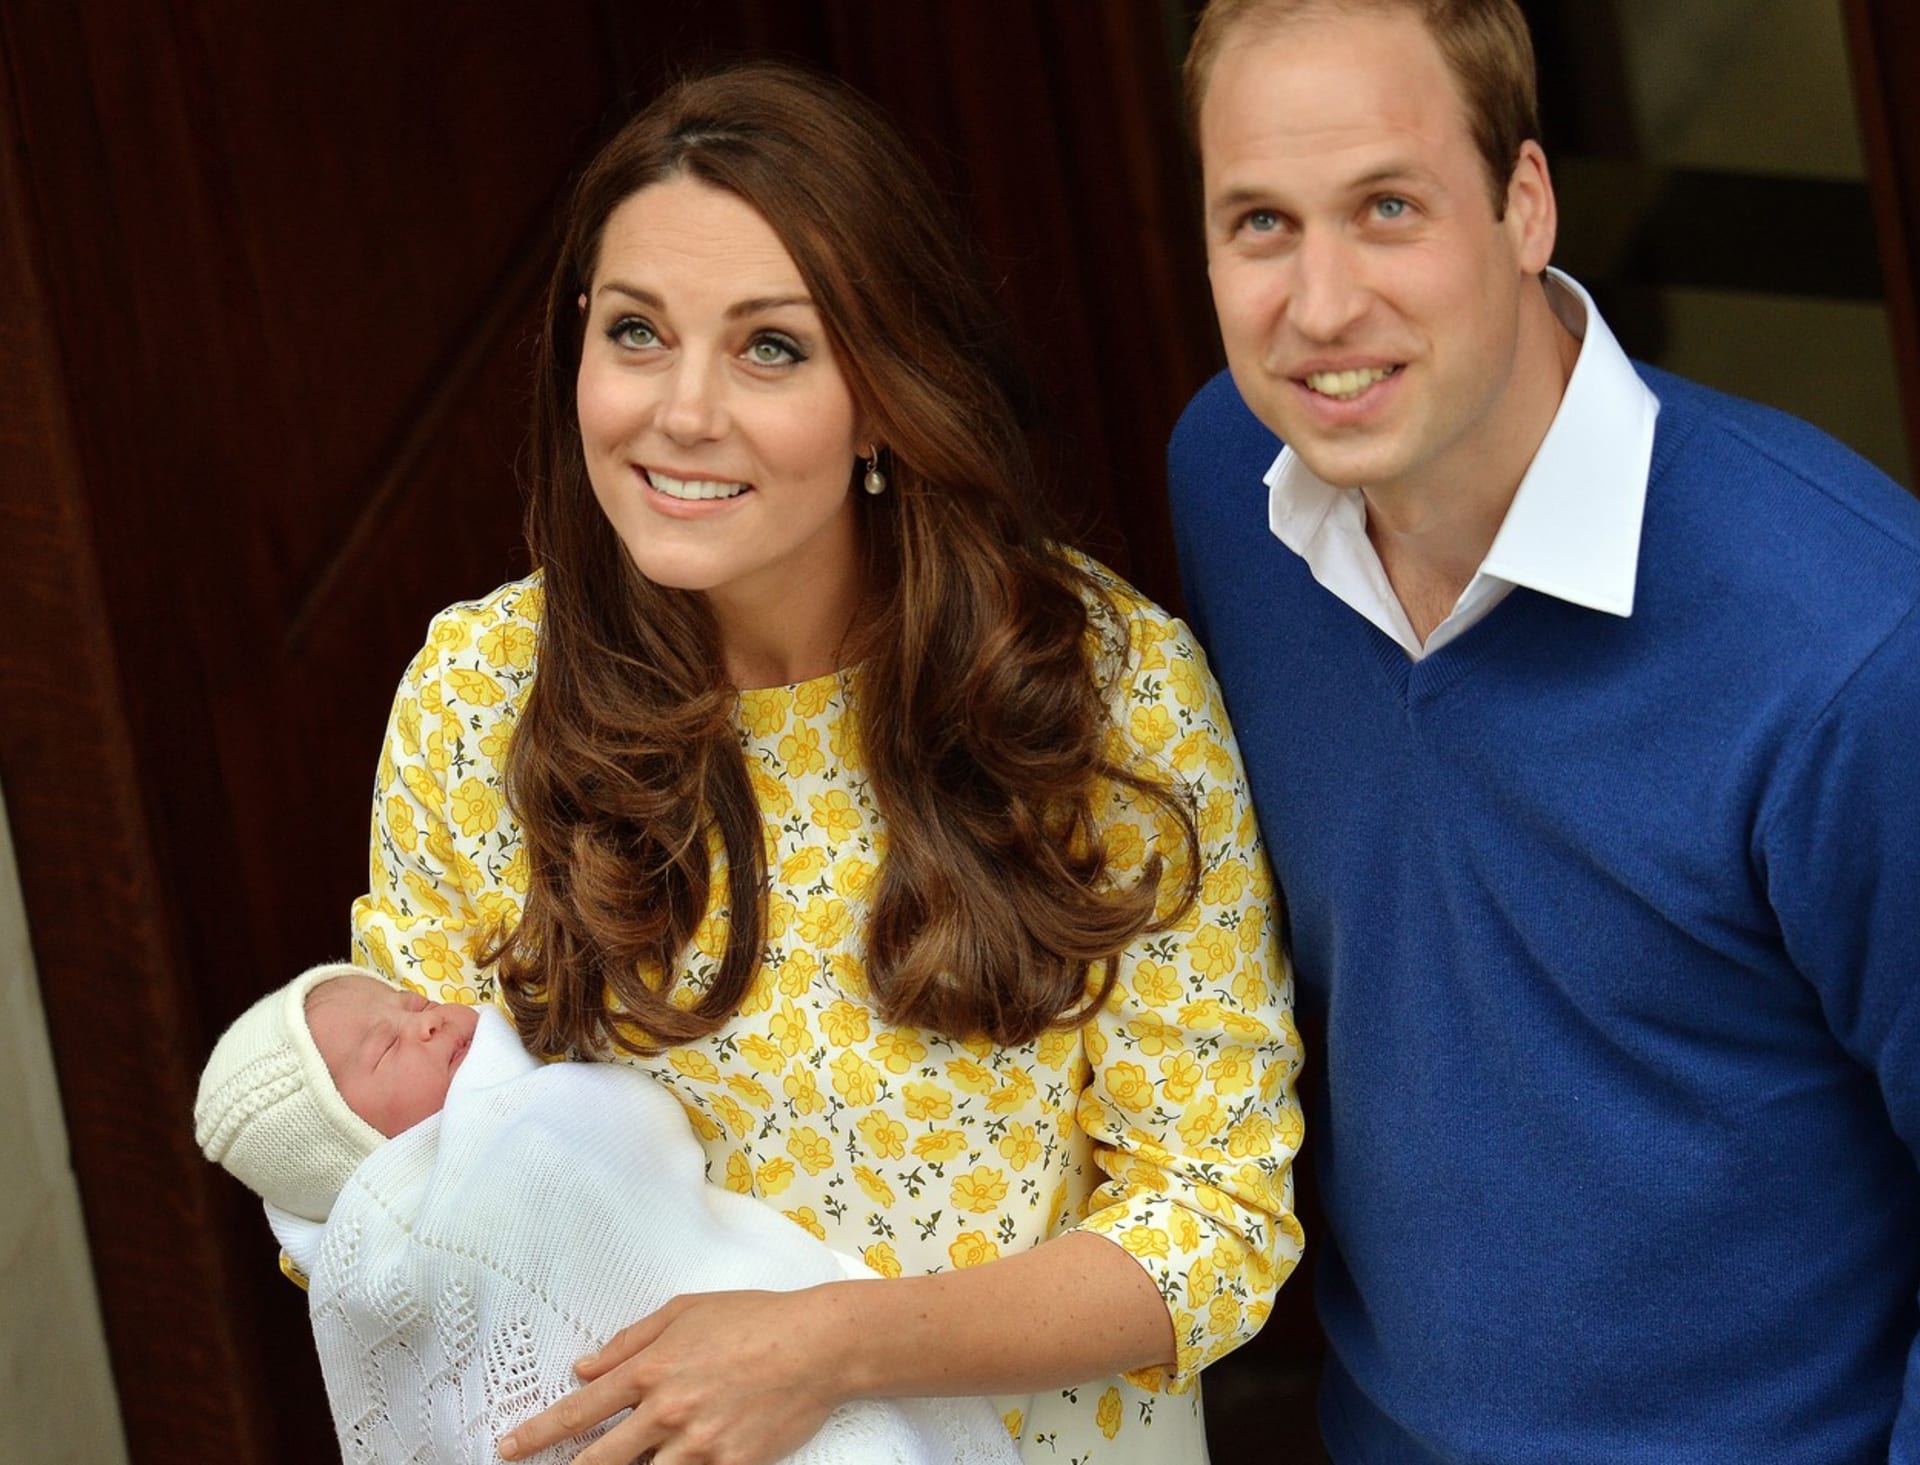 Princezna Charlotte je prostředním dítětem prince Williama a princezny Catherine.